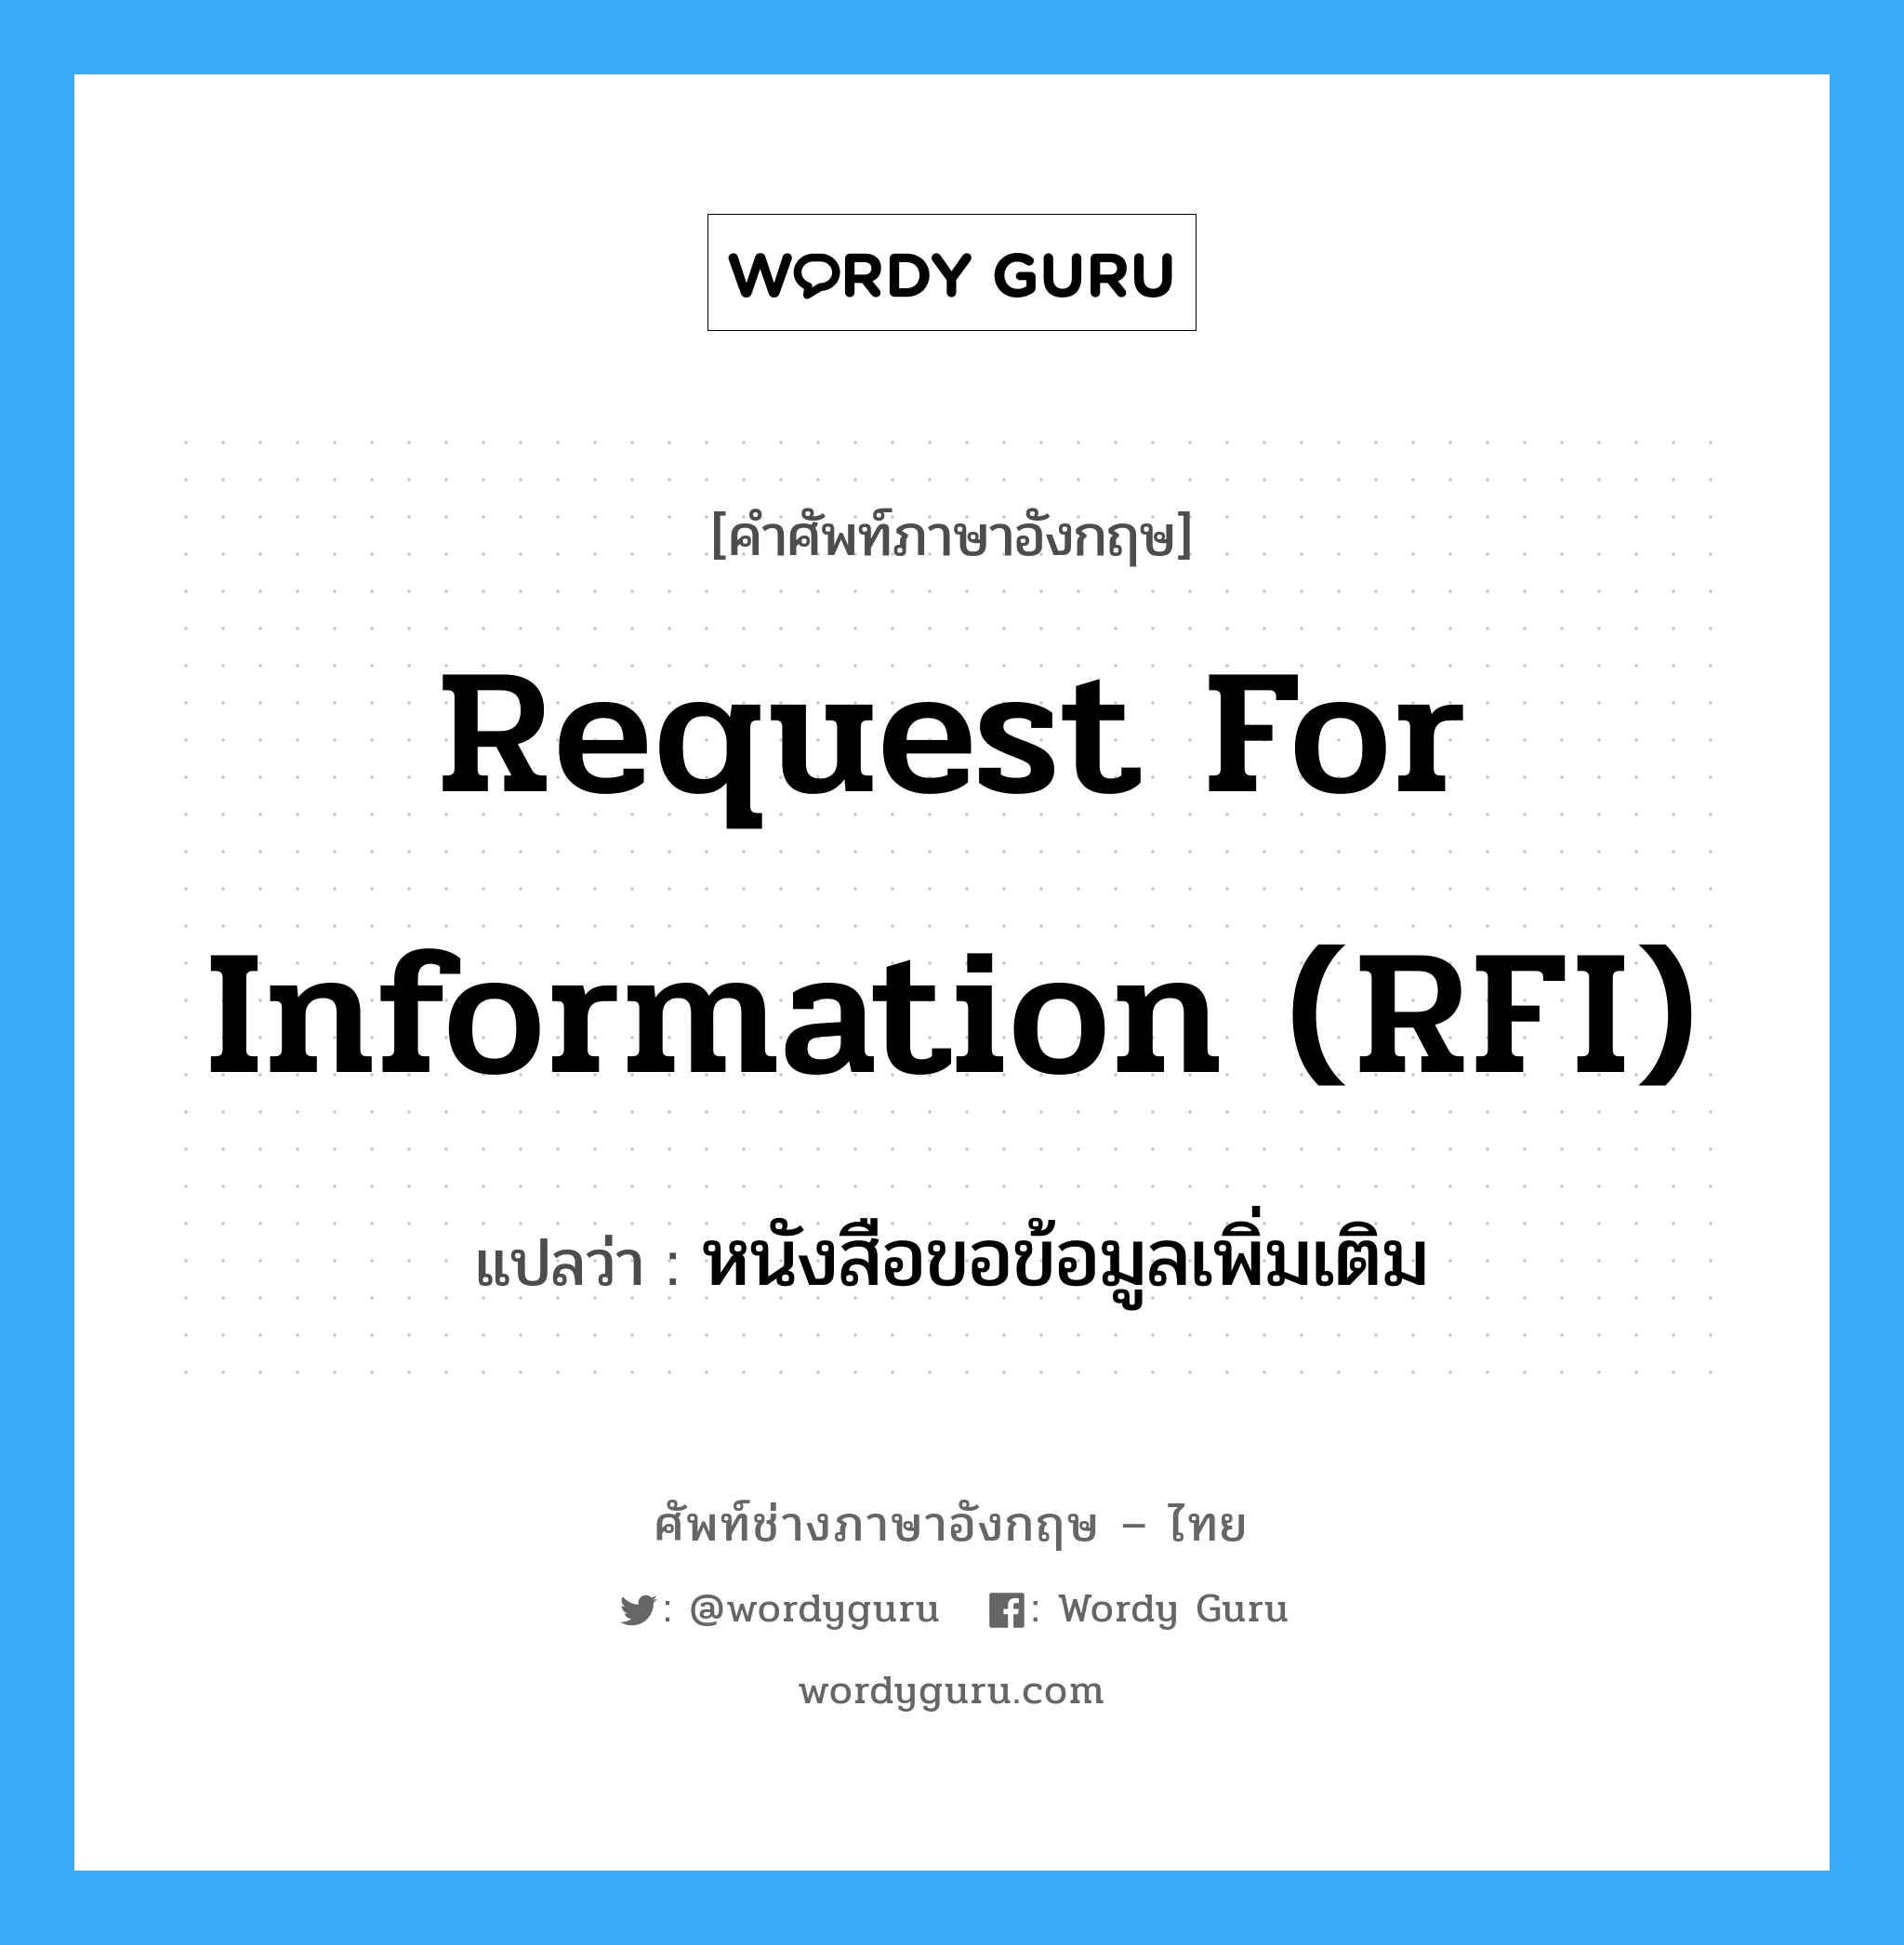 หนังสือขอข้อมูลเพิ่มเติม ภาษาอังกฤษ?, คำศัพท์ช่างภาษาอังกฤษ - ไทย หนังสือขอข้อมูลเพิ่มเติม คำศัพท์ภาษาอังกฤษ หนังสือขอข้อมูลเพิ่มเติม แปลว่า Request for Information (RFI)